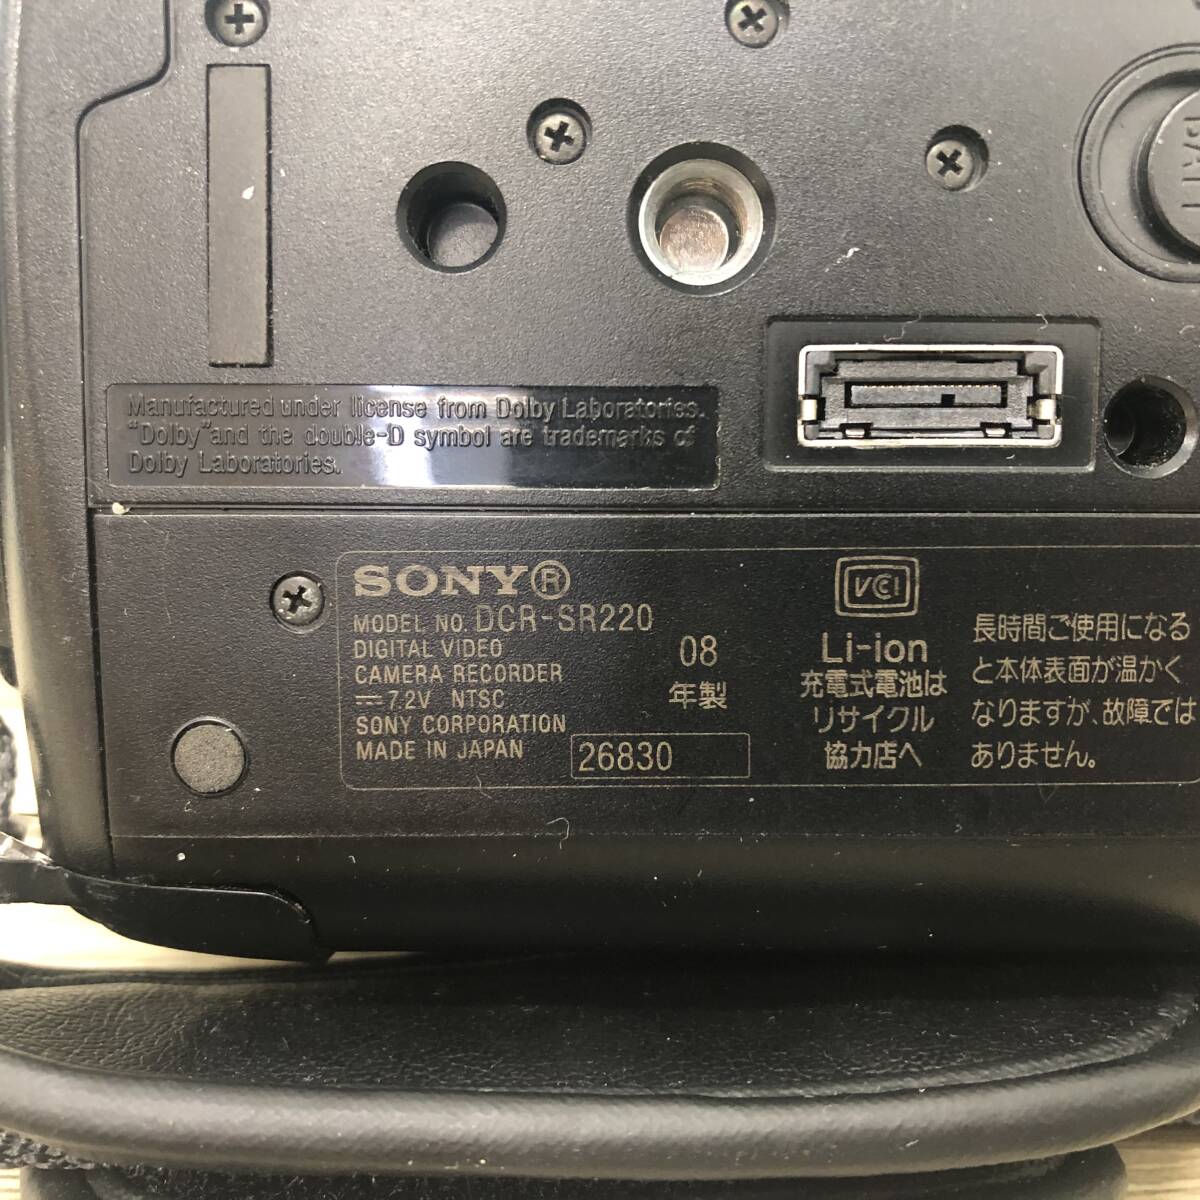 【500円スタート】SONY ソニー デジタルビデオカメラ DCR-SR220 HYBRID HDD HANDYCAM 4.0MEGA PIXELS 光学式手ブレ補正 _画像8